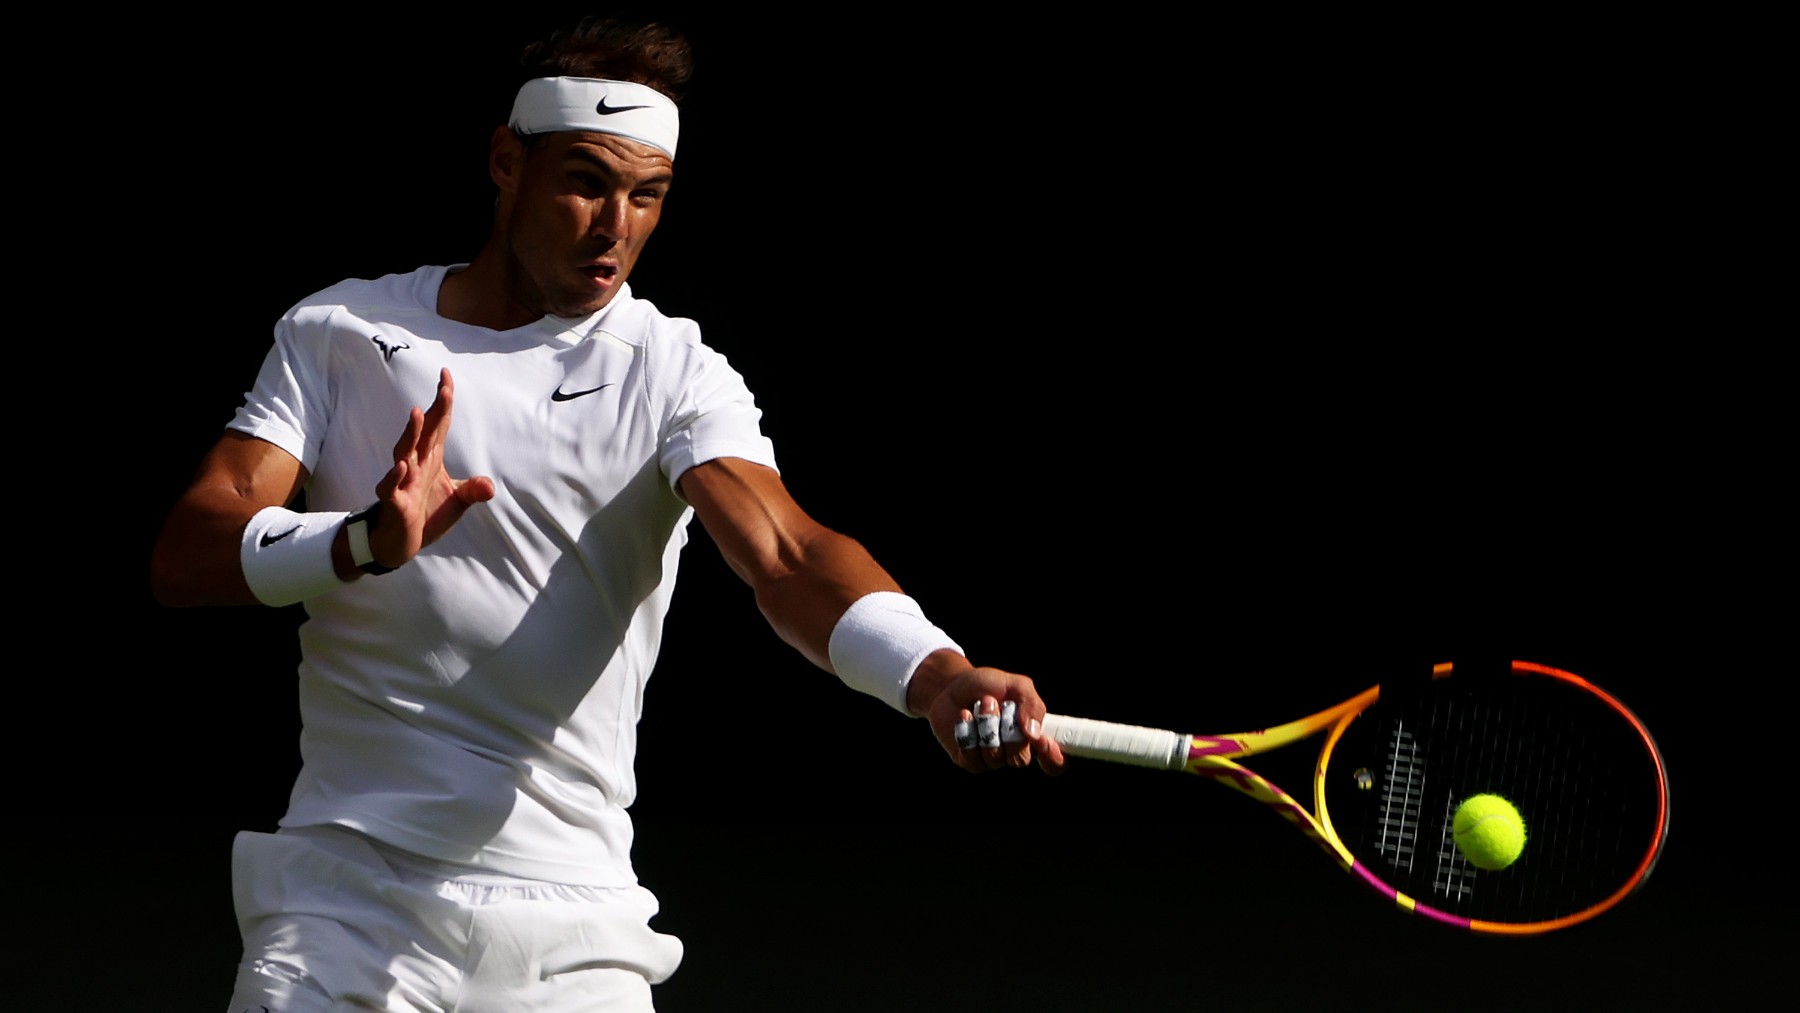 Sigue en directo el Rafa Nadal – Berankis, el partido de Wimbledon 2022. (Getty)